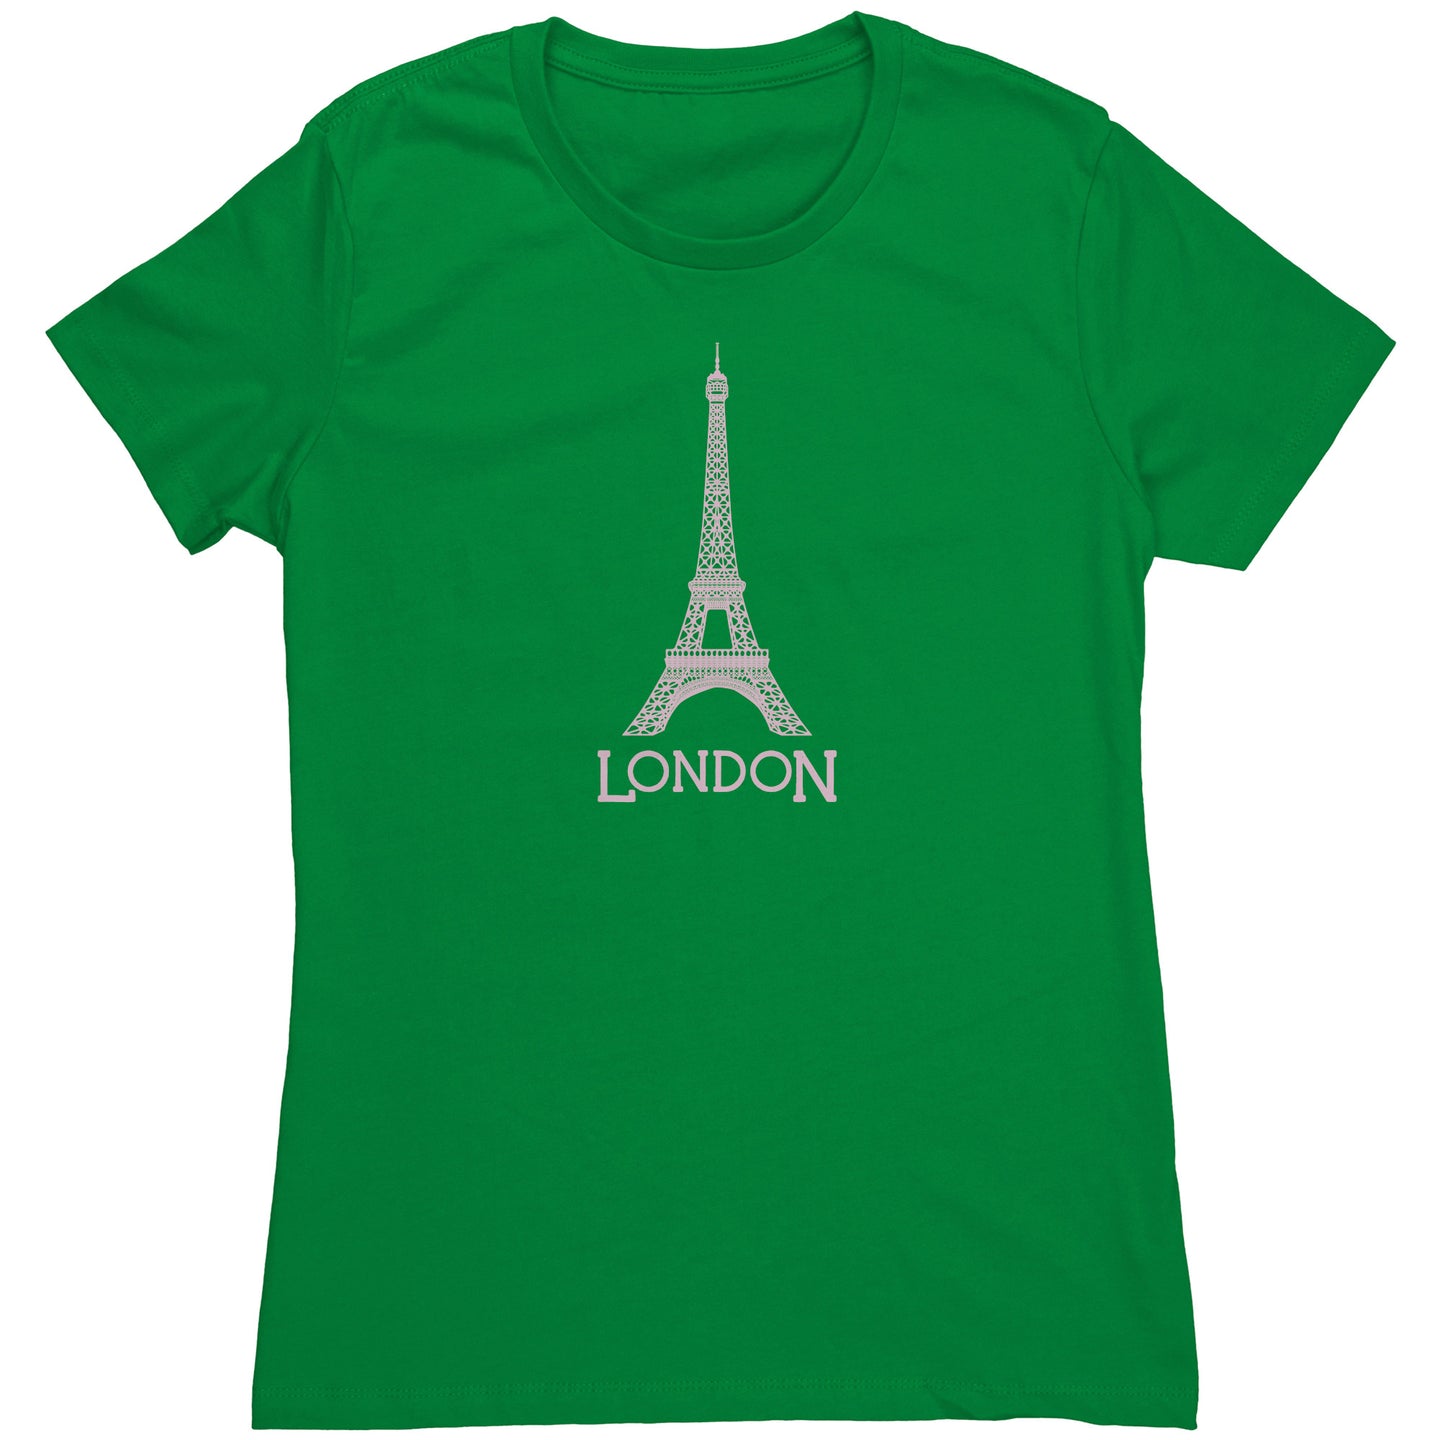 LONDON! women's t-shirt